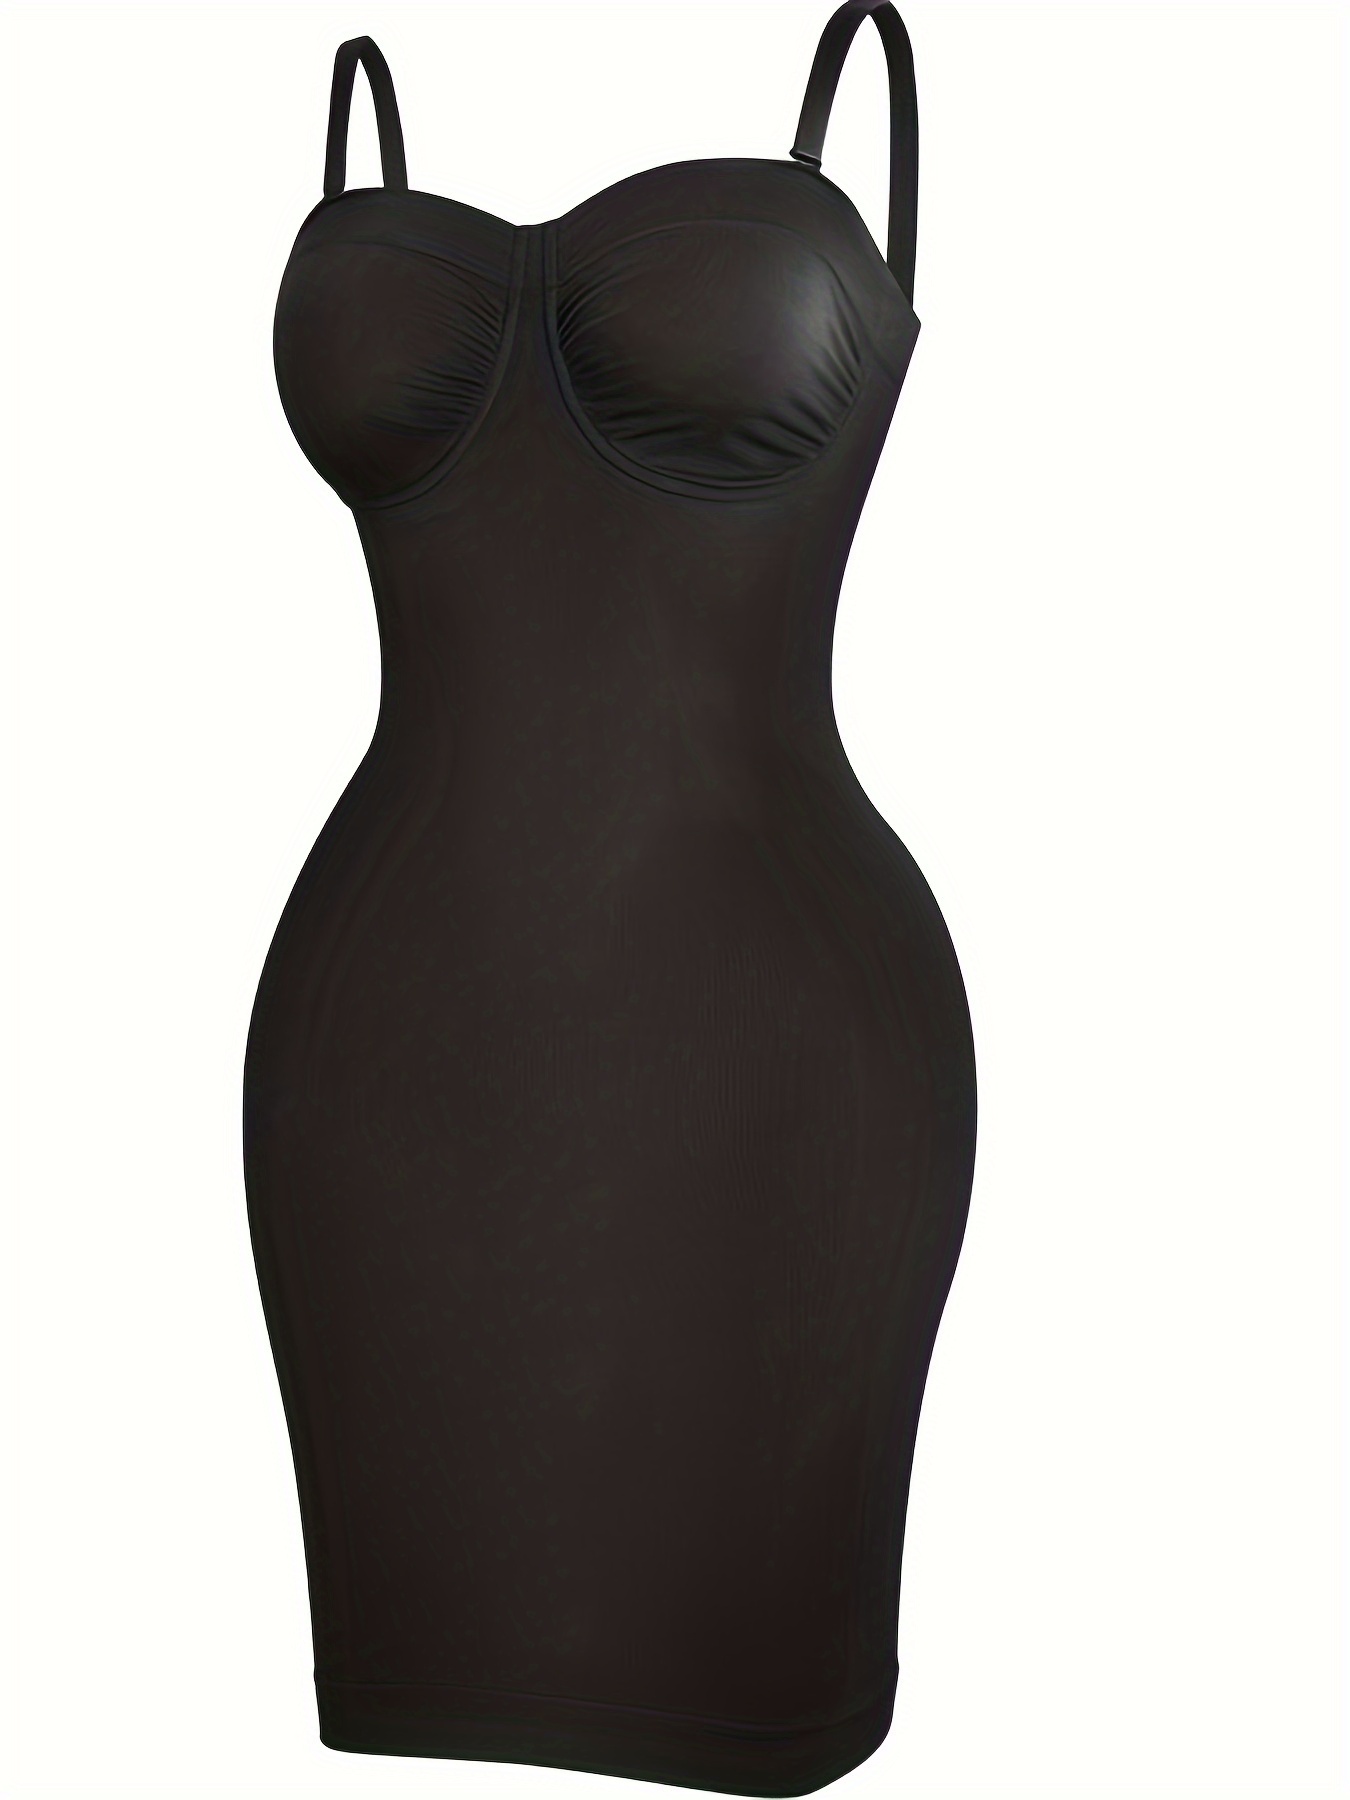 Vaslanda Strapless Shapewear Slip for Women Tummy Control Seamless Full Body  Shaper Under Dress Slip 